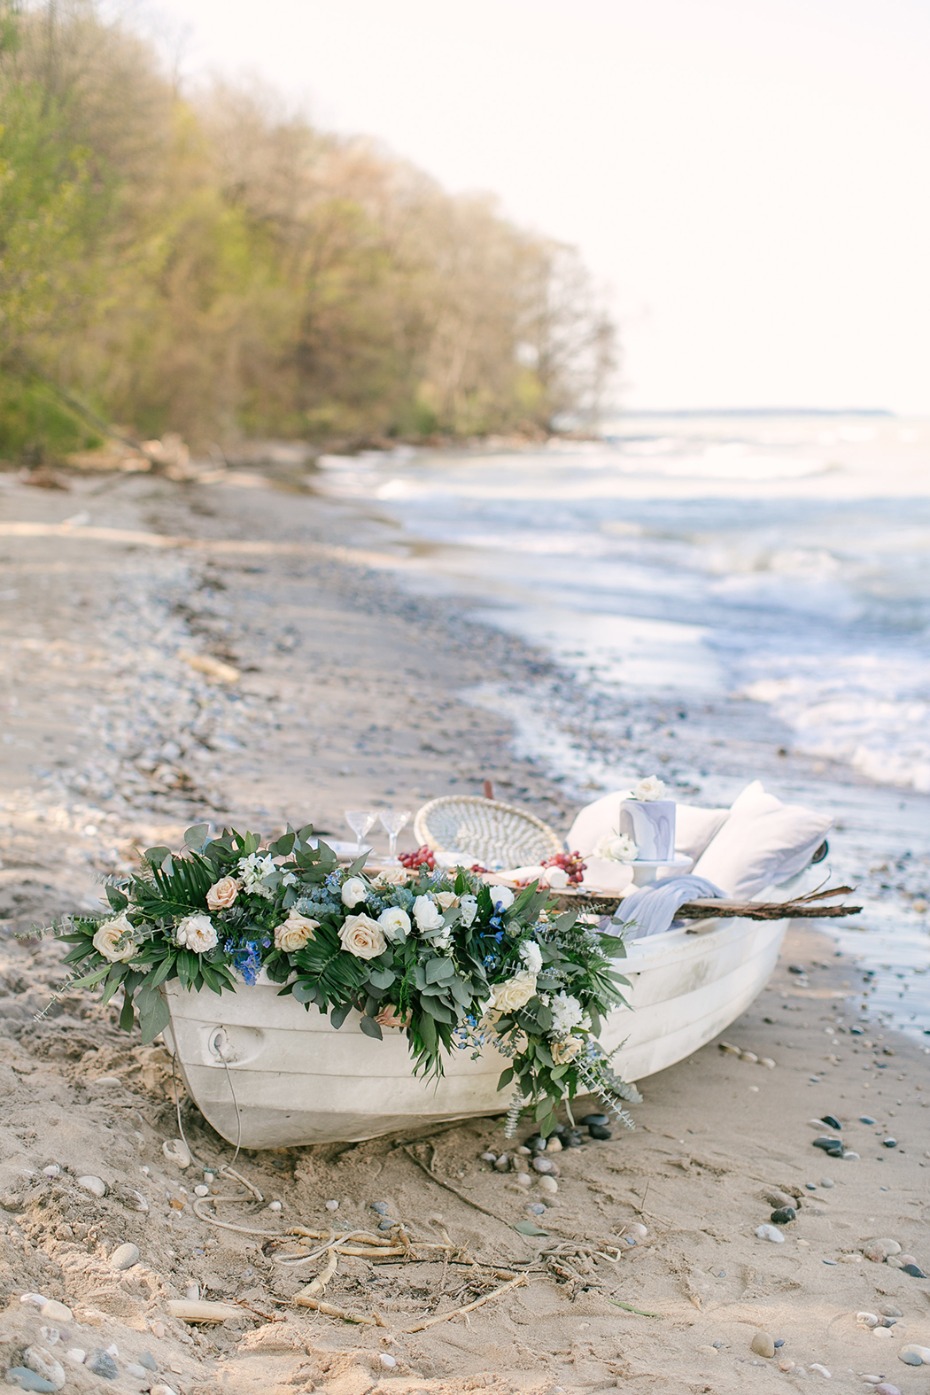 wedding rowboat on a beach